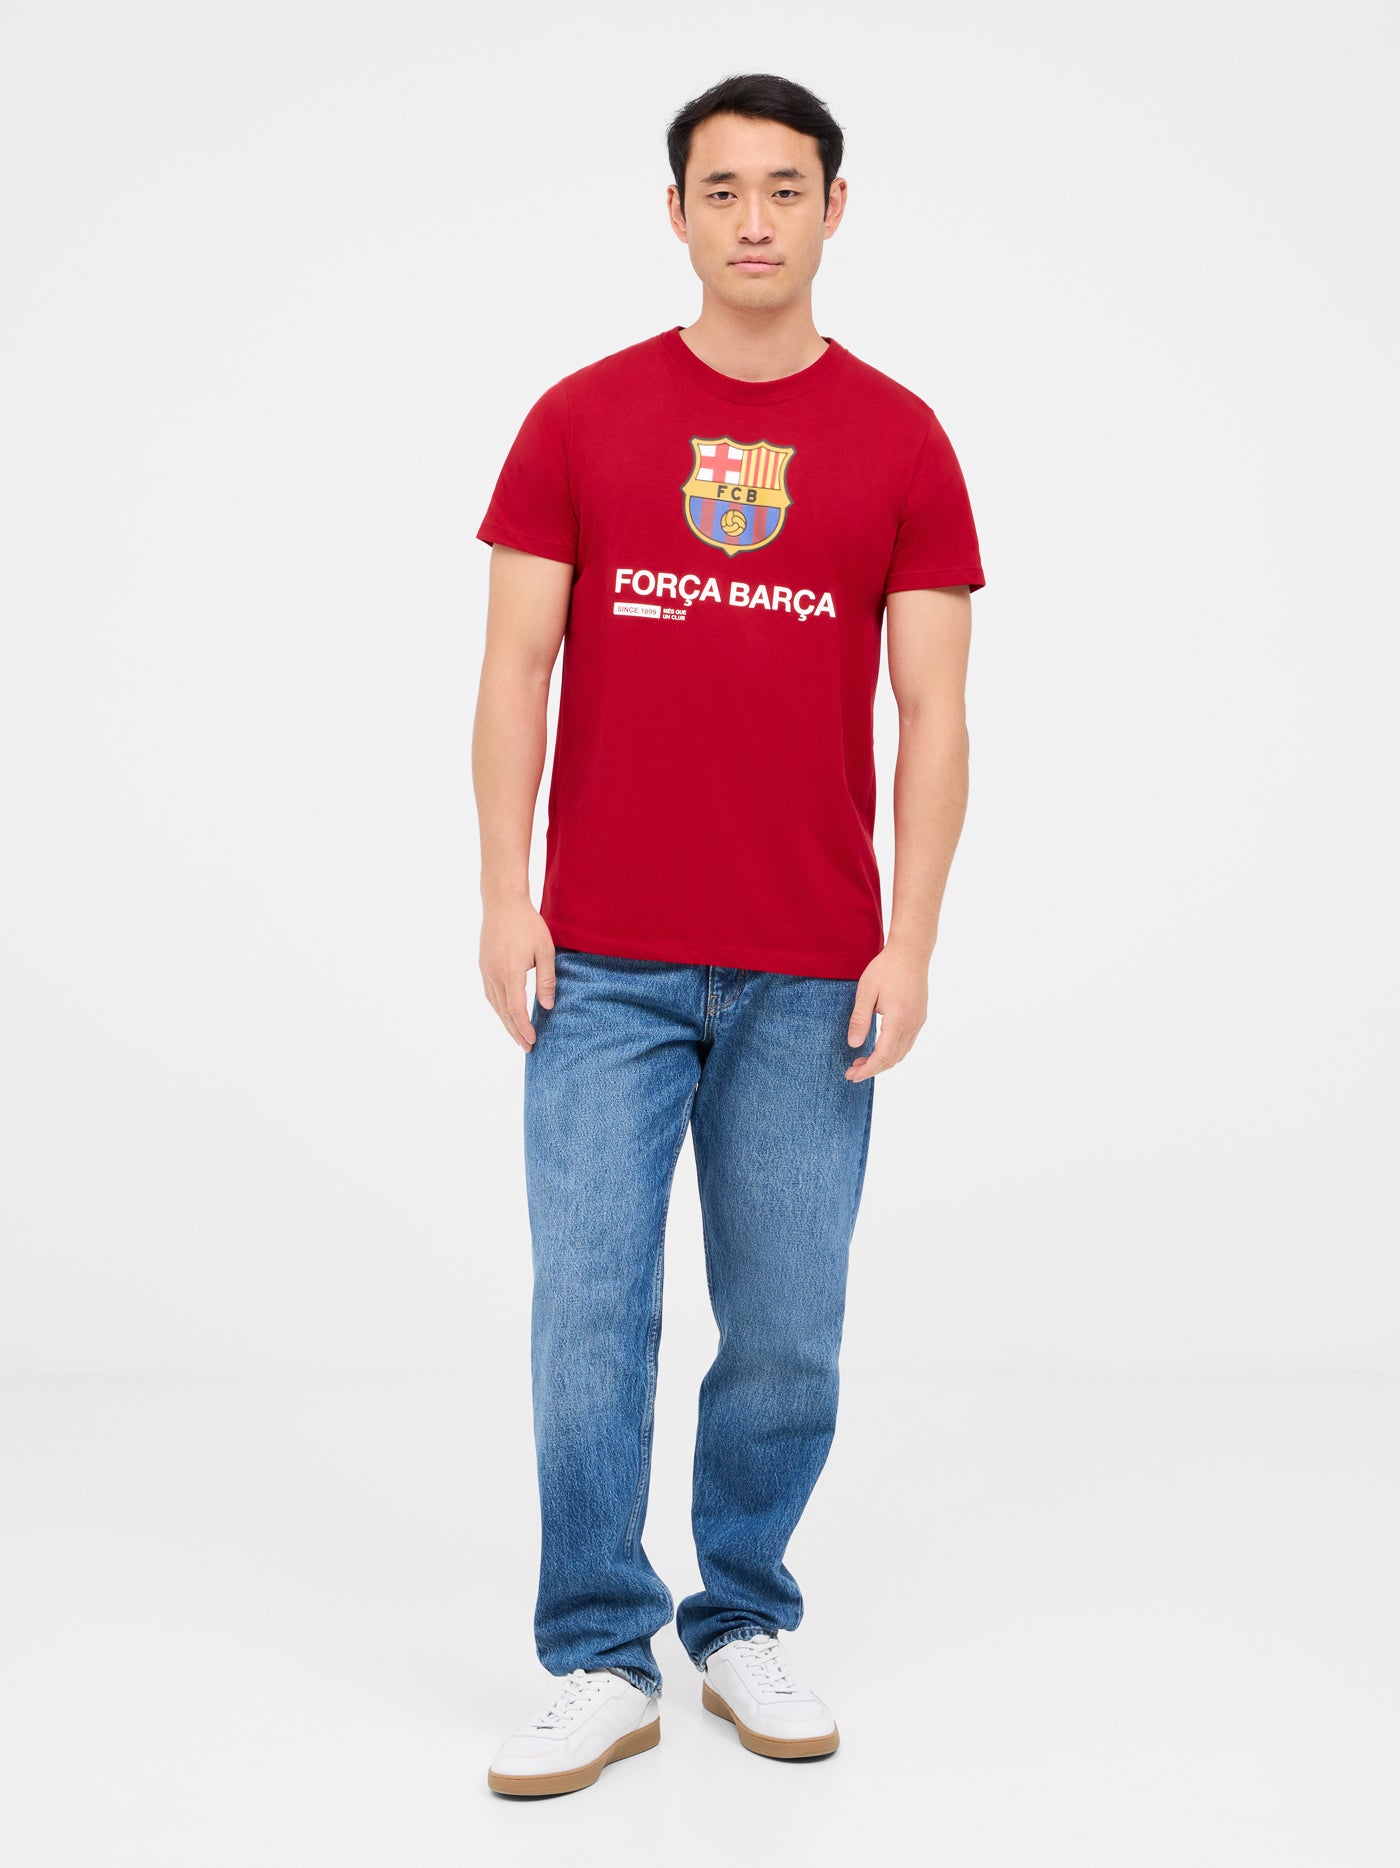 T-shirt red Força Barça